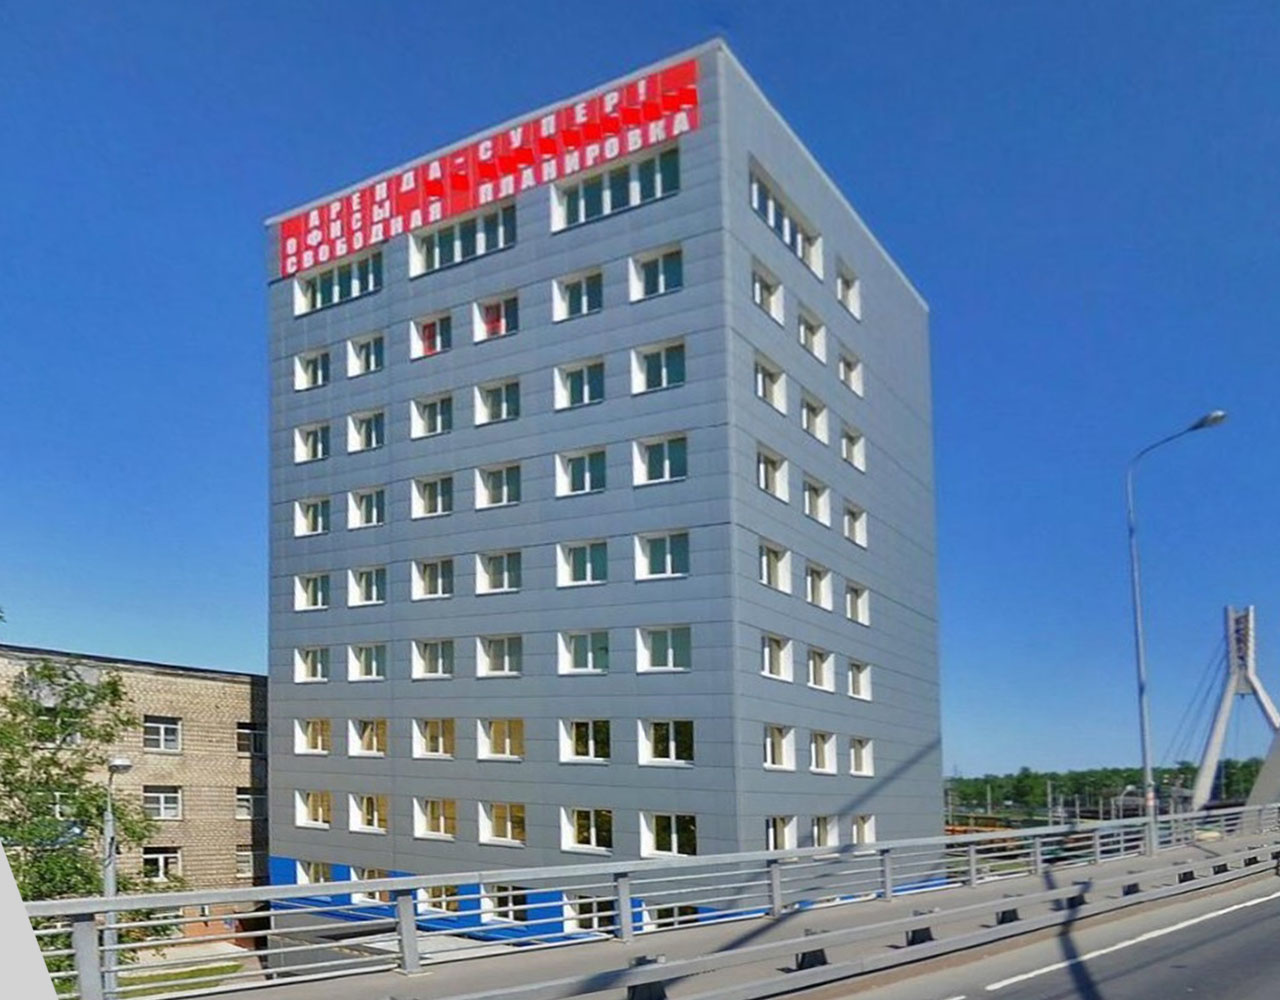 Фото №3. Здание на юго-западе Санкт-Петербурга, где размещается офис компании «Техника Топлива»